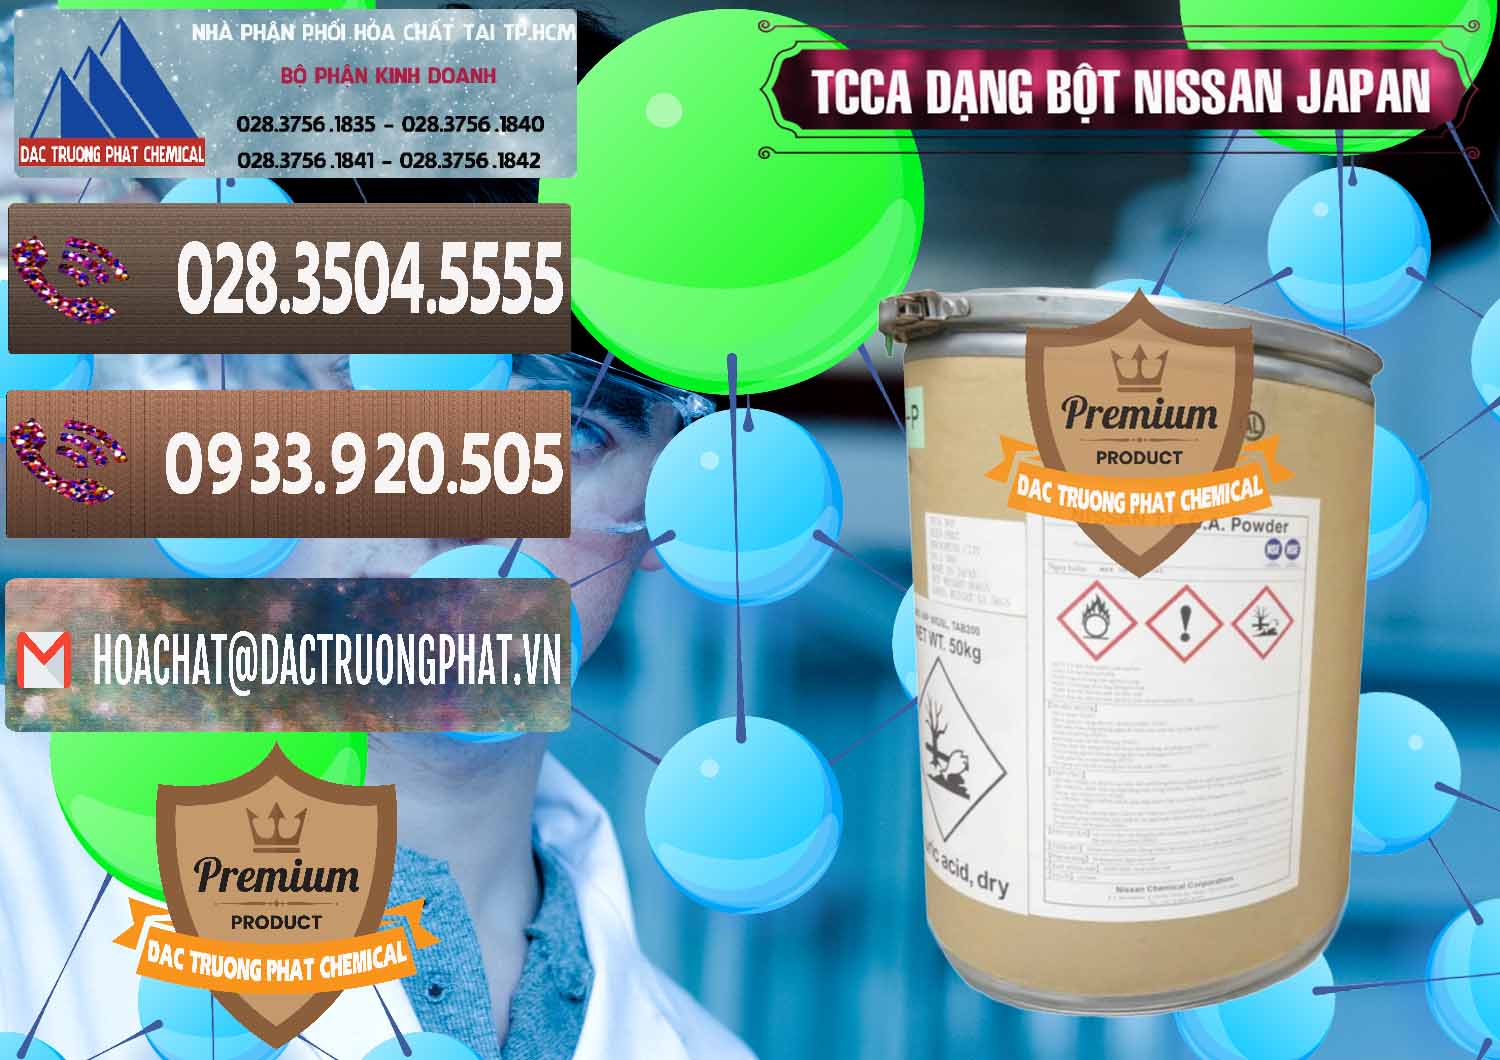 Cty bán & cung cấp TCCA - Acid Trichloroisocyanuric 90% Dạng Bột Nissan Nhật Bản Japan - 0375 - Cty kinh doanh & cung cấp hóa chất tại TP.HCM - hoachatviet.net